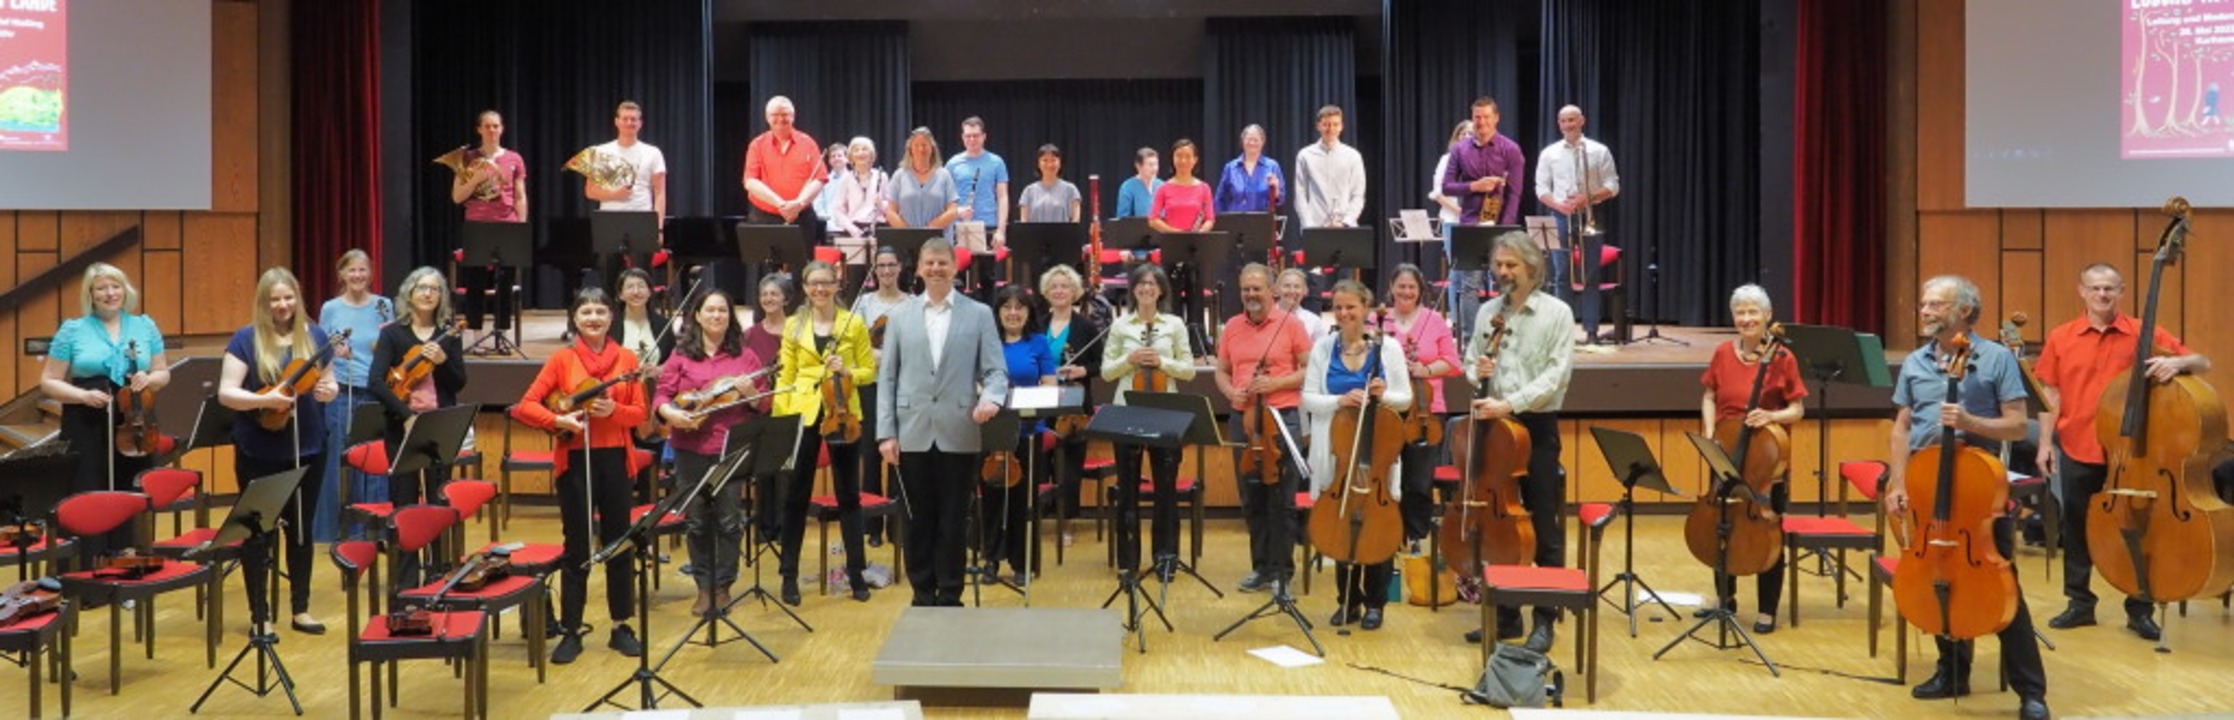 Das Sinfonische Orchester mit Dirigent Olaf Nießing  | Foto: privat